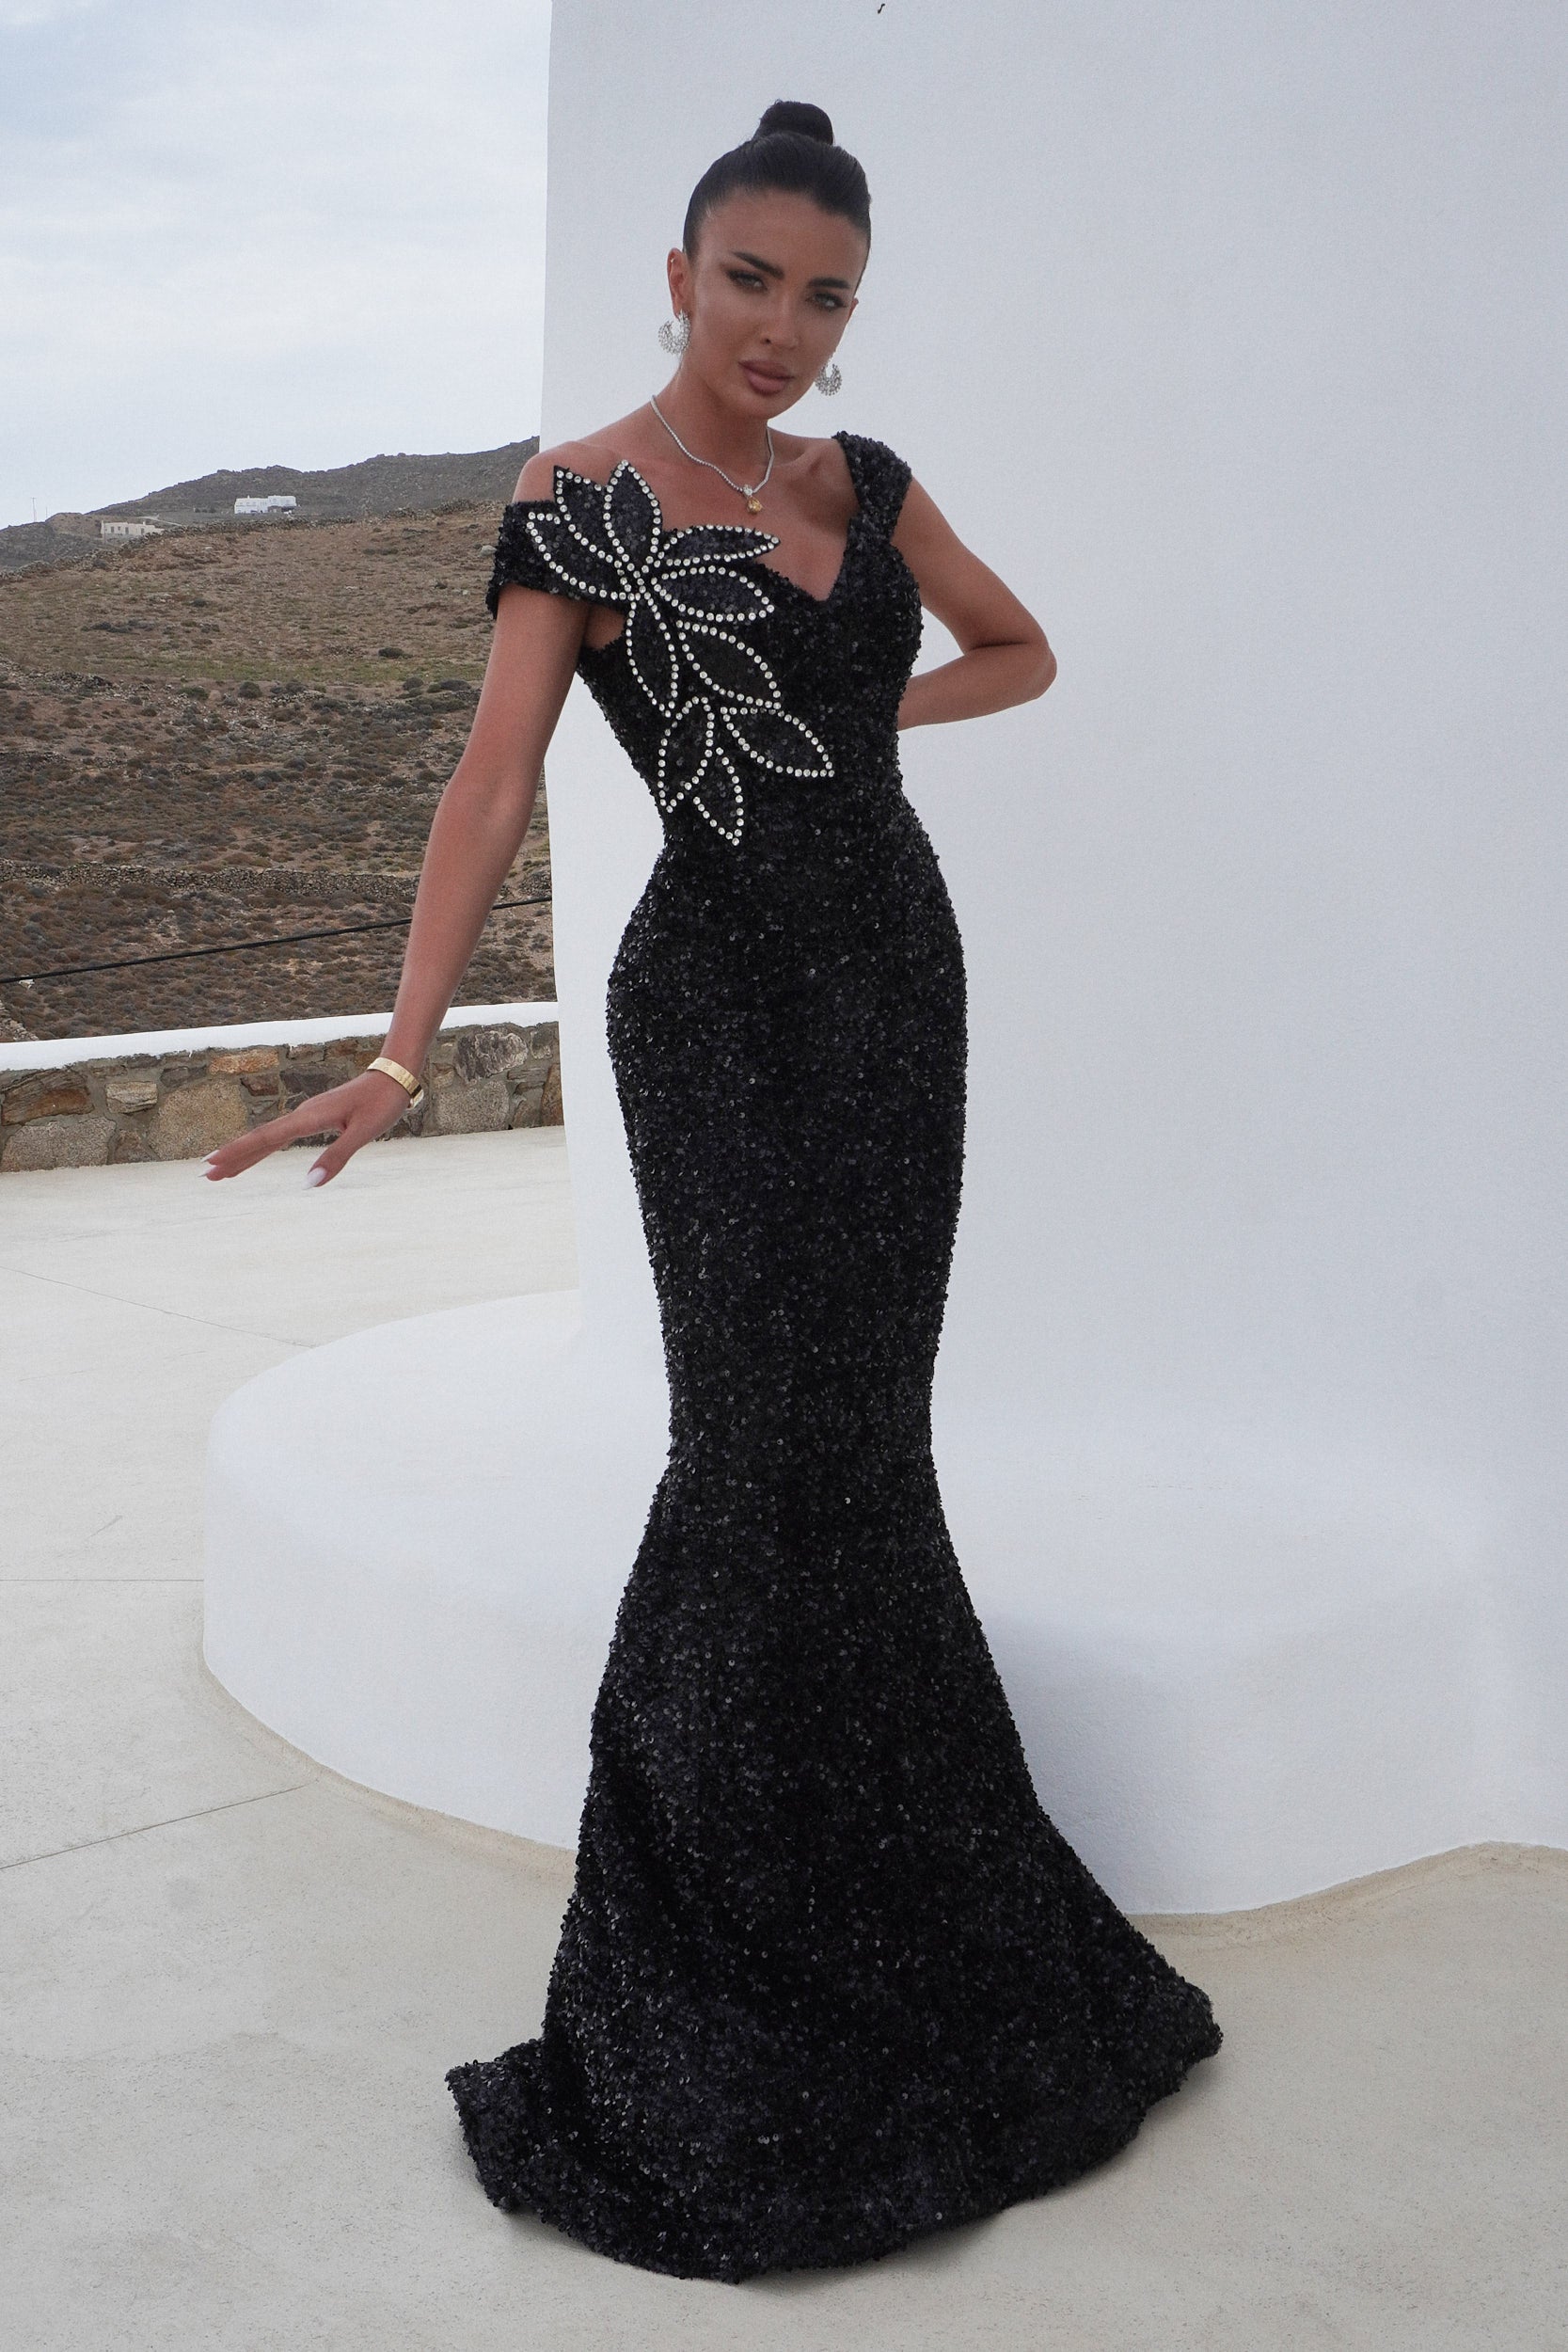 Tamora Bogas hosszú fekete női ruha